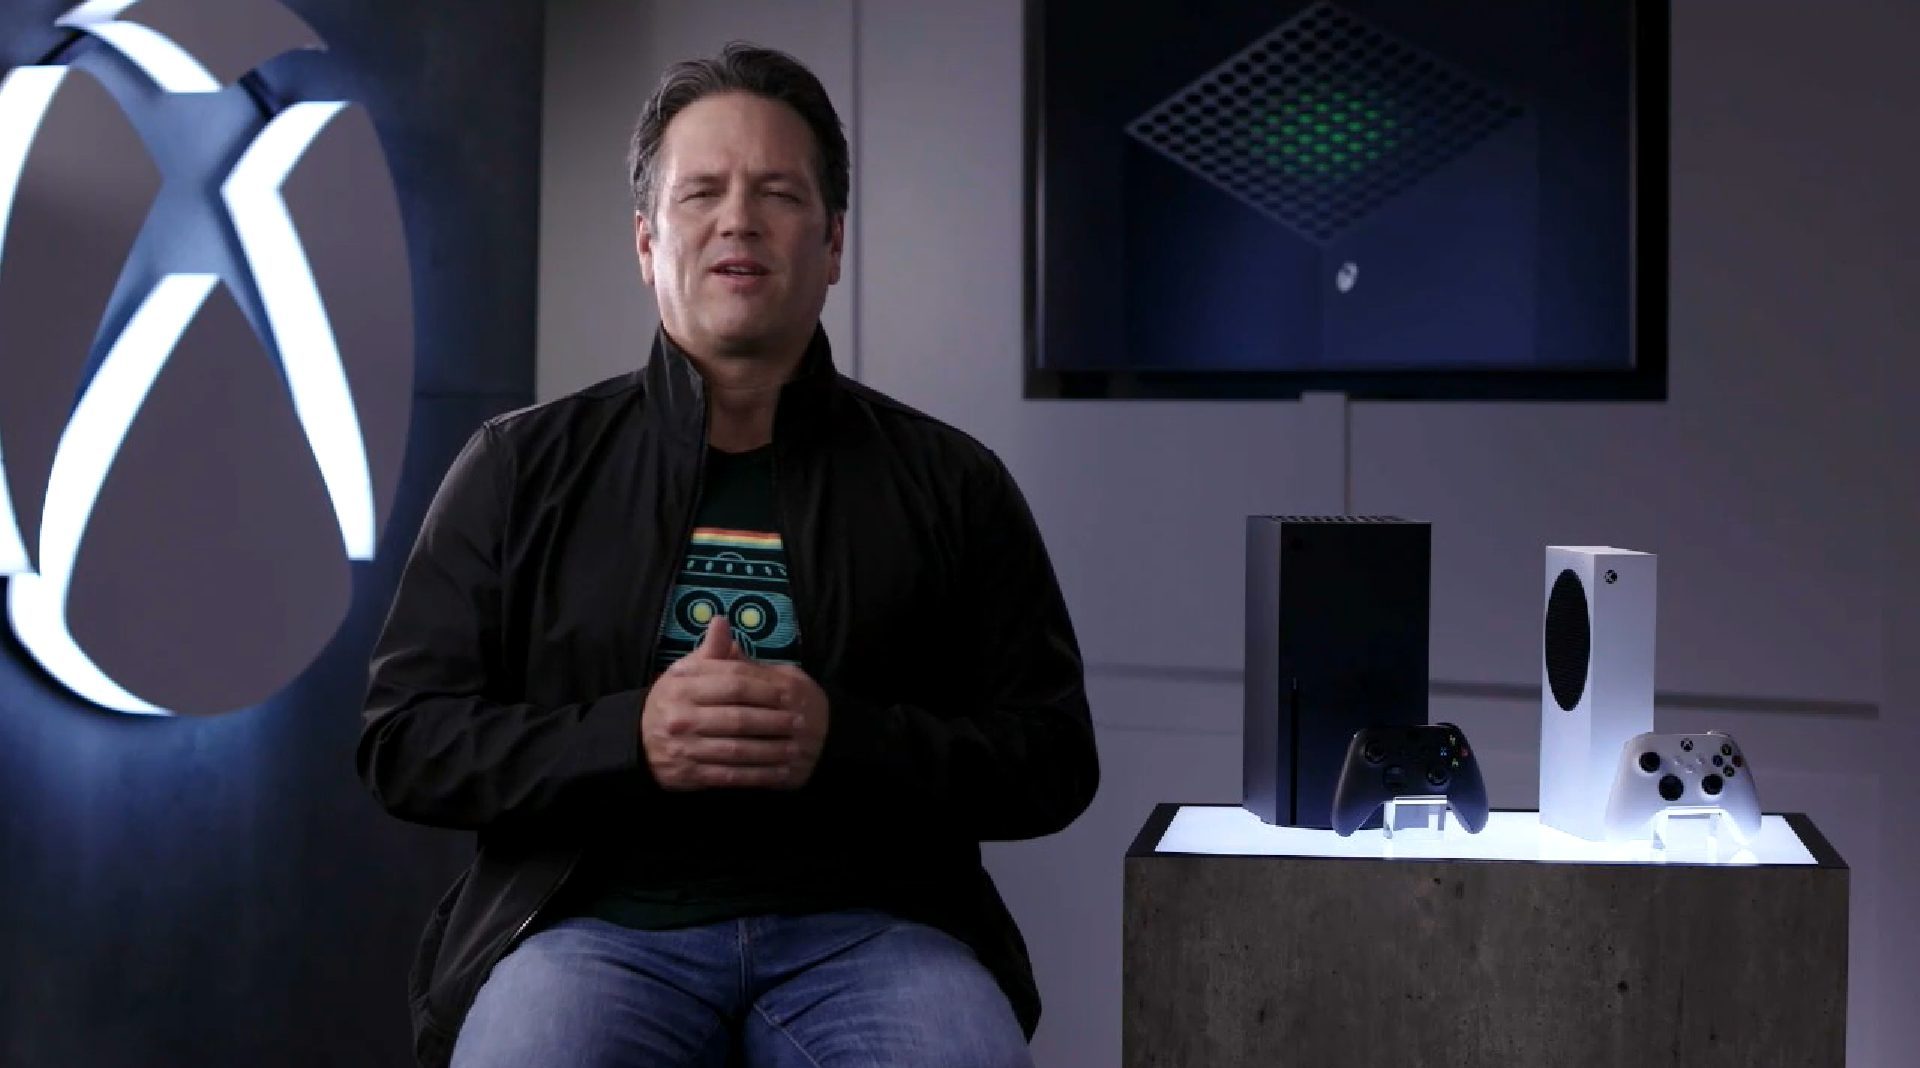 Xbox Series XS : Seagate baisse le prix de sa carte d'extension de stockage